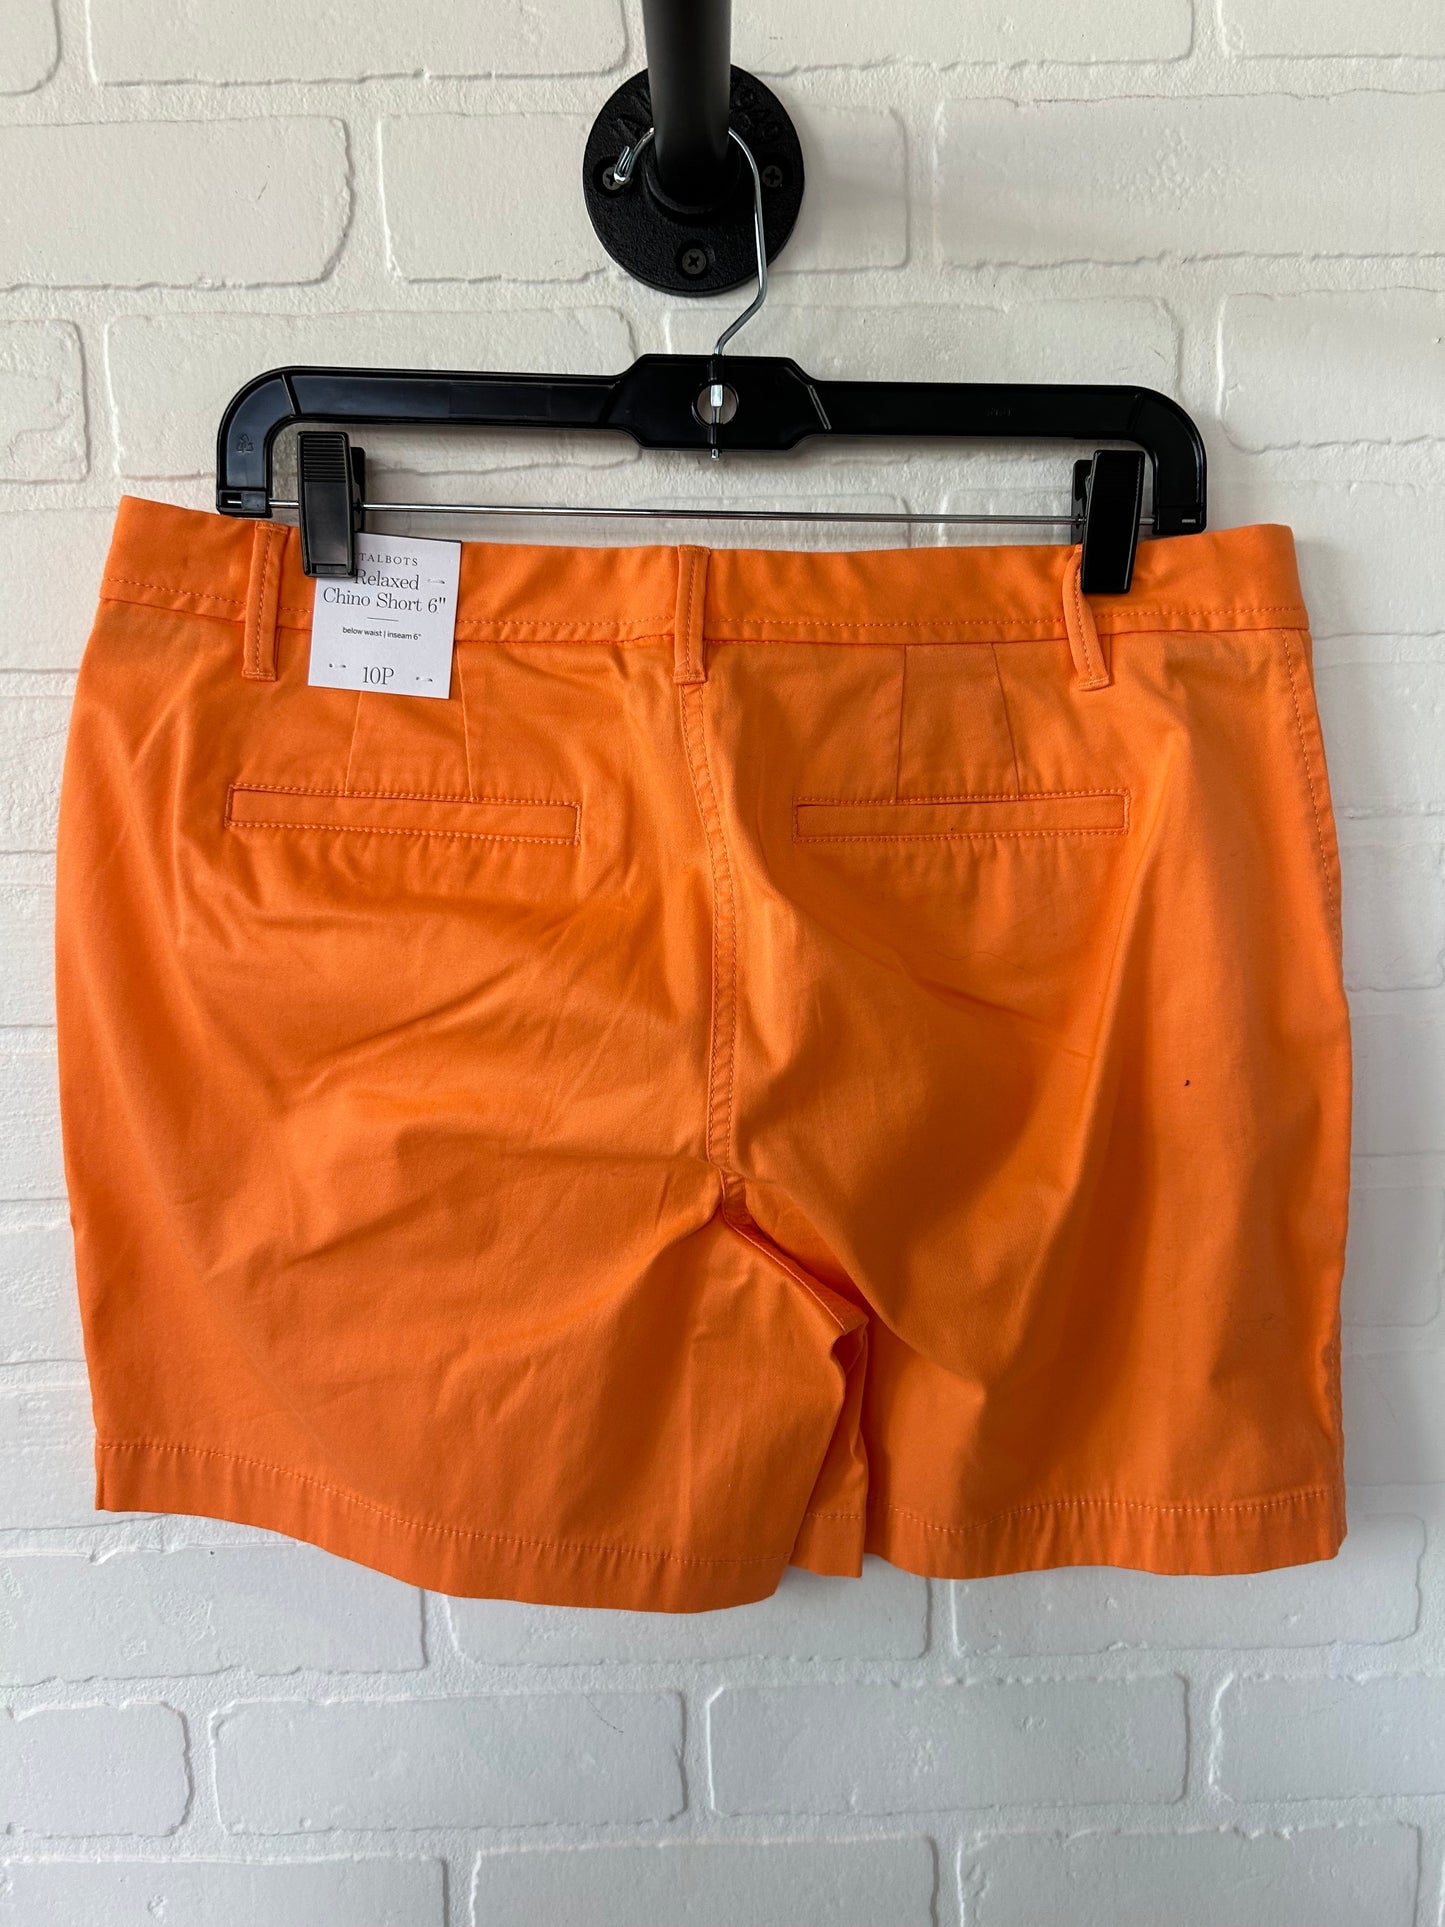 Orange Shorts Talbots, Size 10petite